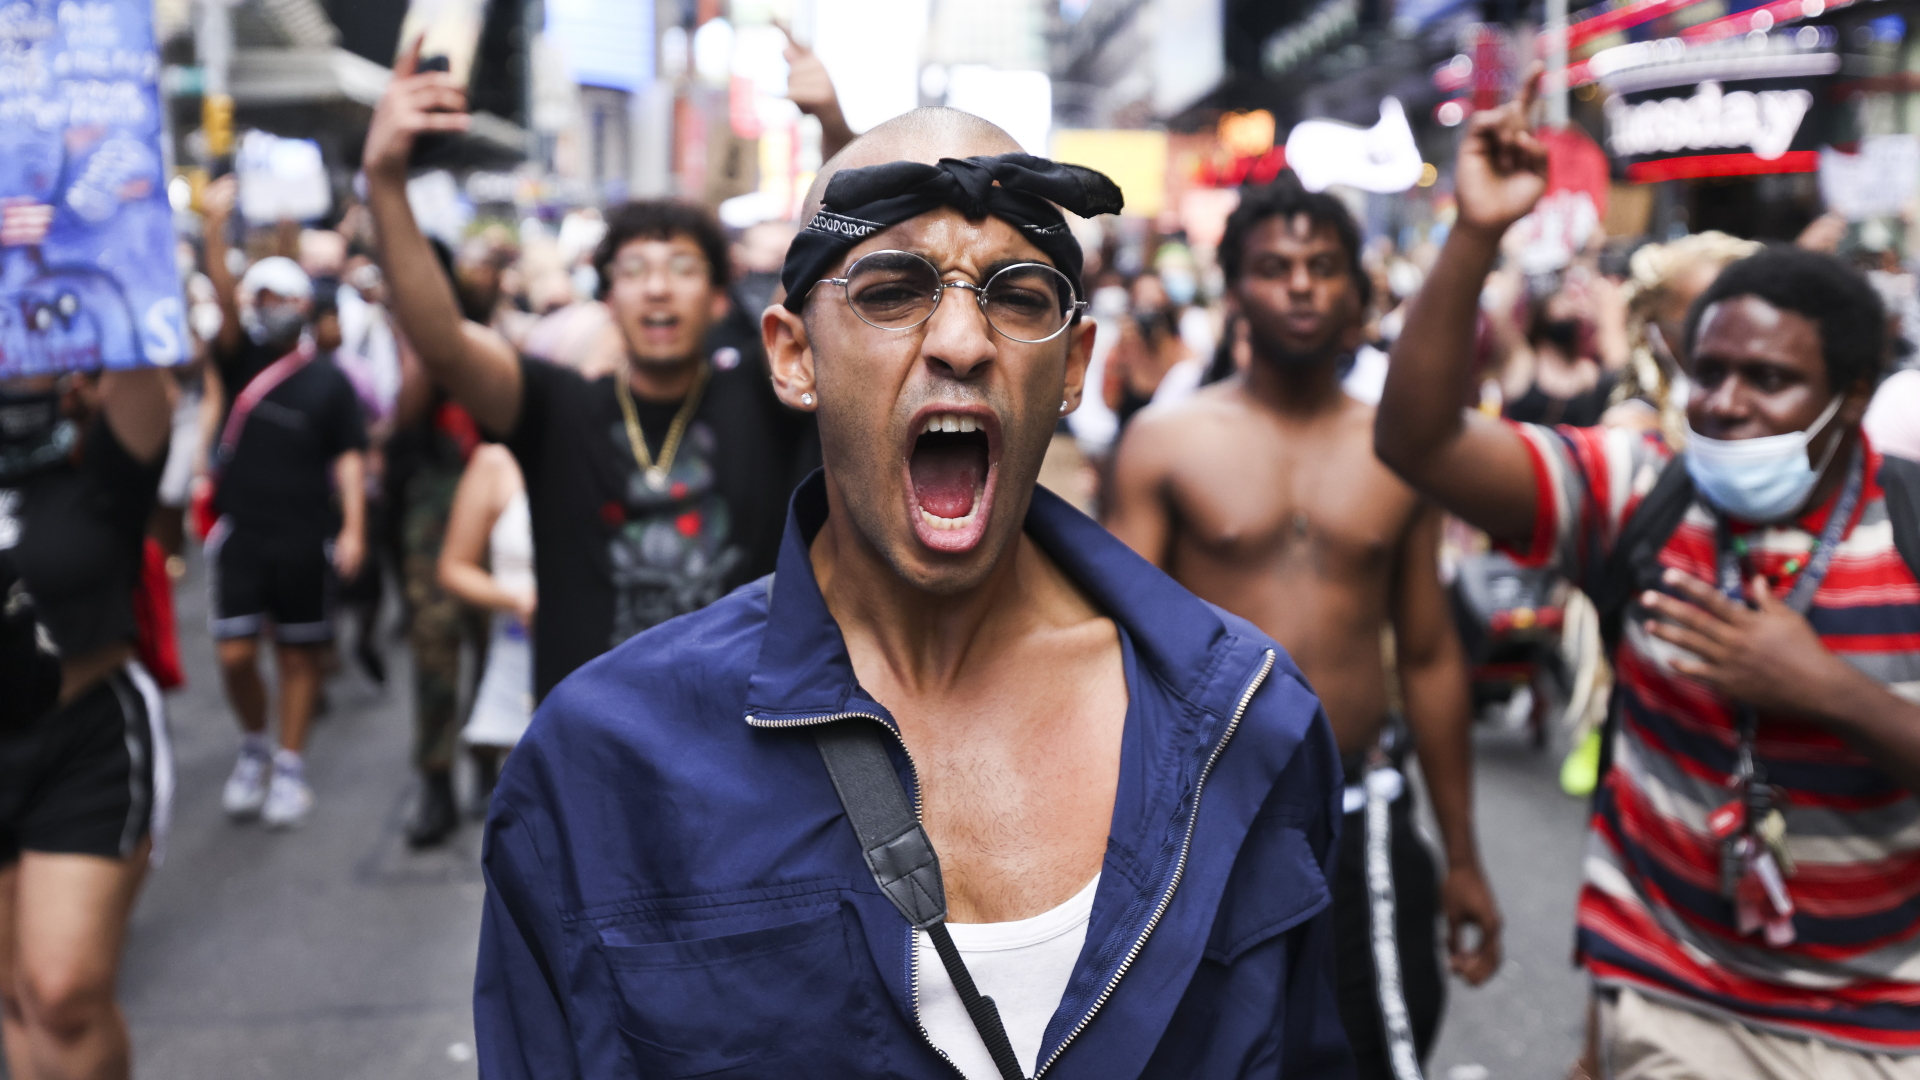 Demonstranten protestieren auf dem Time Square nach Schüssen eines Polizisten auf einen Schwarzen in Kenosha | JUSTIN LANE/EPA-EFE/Shutterstock